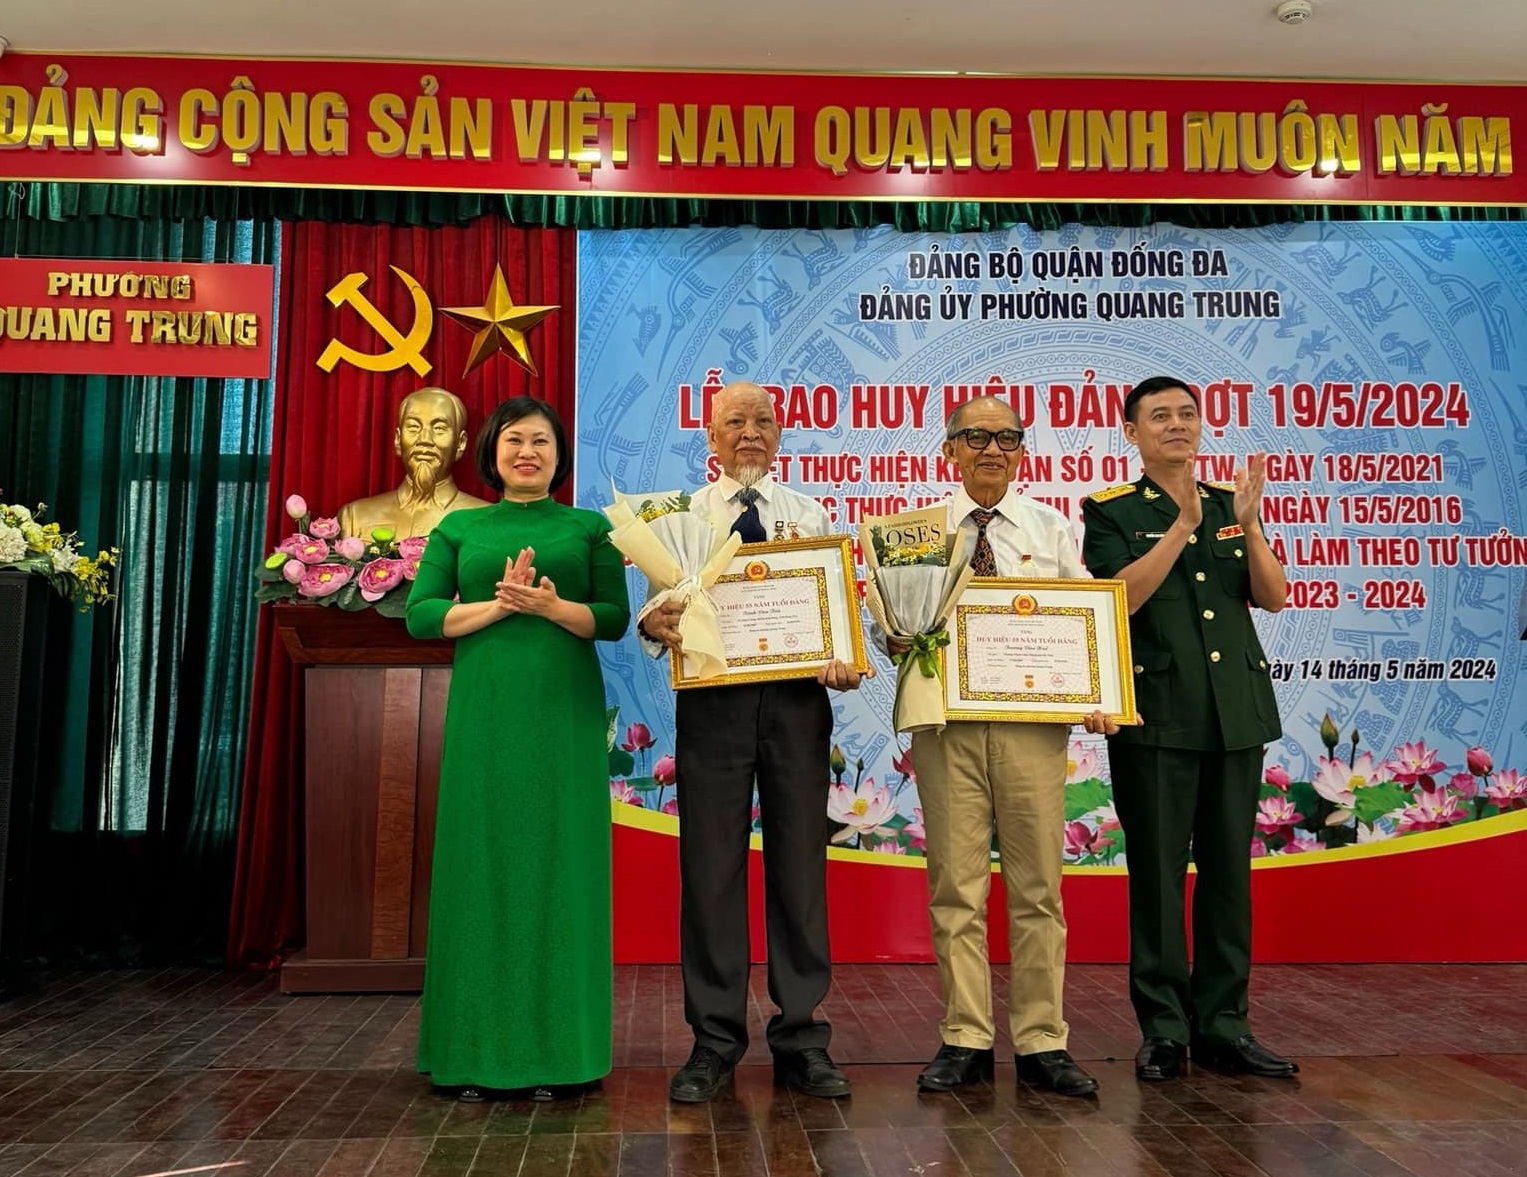 Đảng bộ Phường Quang Trung : Trao tặng huy hiệu Đảng đợt 19/5/2024; Sơ kết thực hiện Kết luận số 01-KL/TW, của Bộ Chí Trị khoá XII 